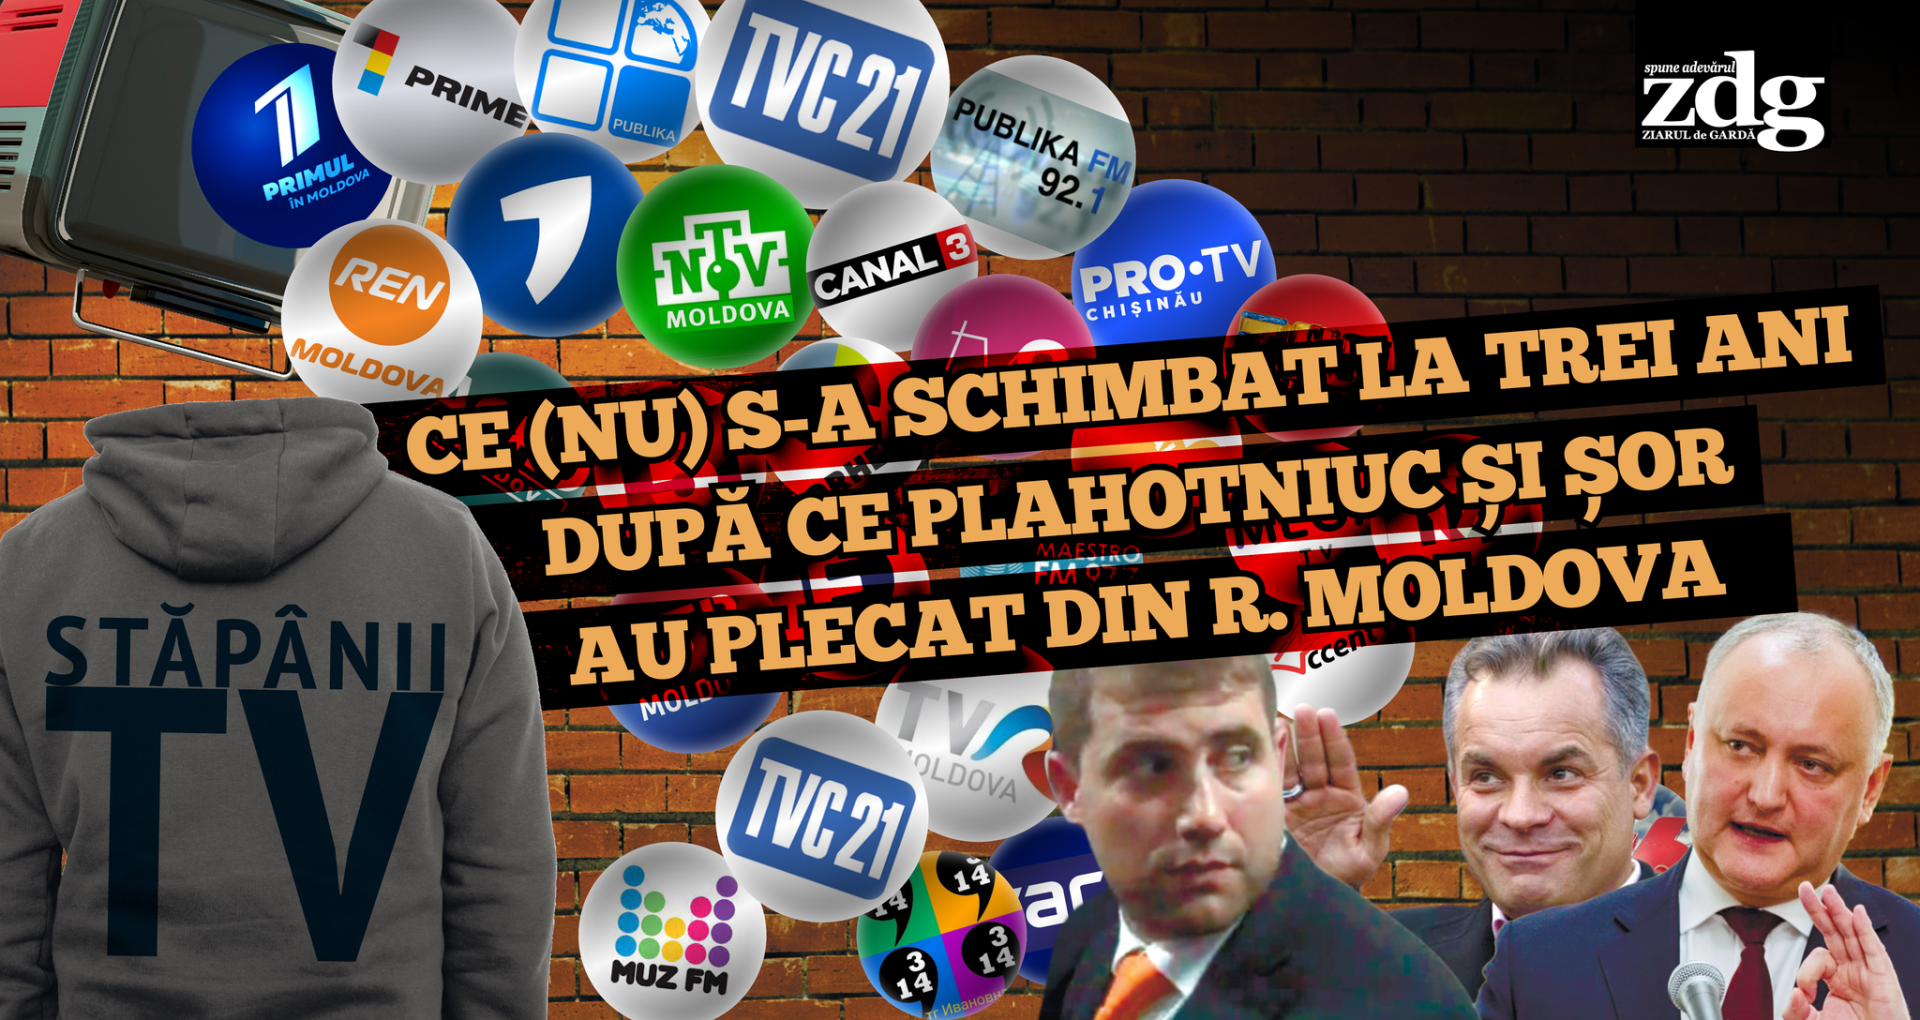 VIDEO/ Stăpânii televiziunilor: Ce (nu) s-a schimbat la trei ani după ce Plahotniuc și Șor au plecat din R. Moldova